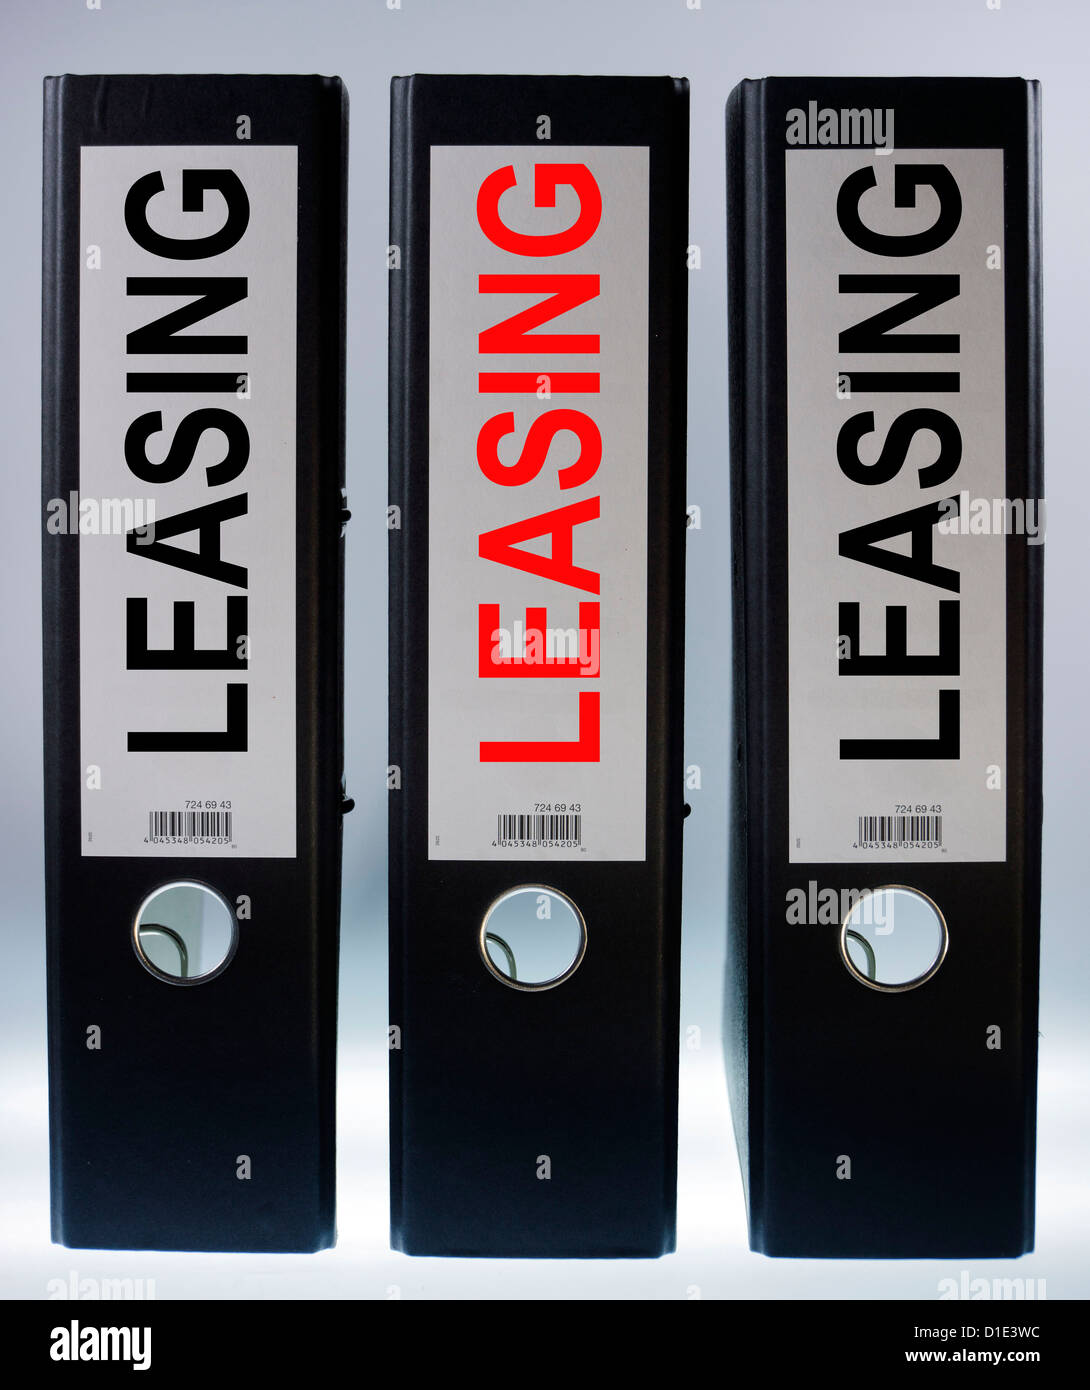 Immagine di simbolo, cartella di file denominata leasing Foto Stock